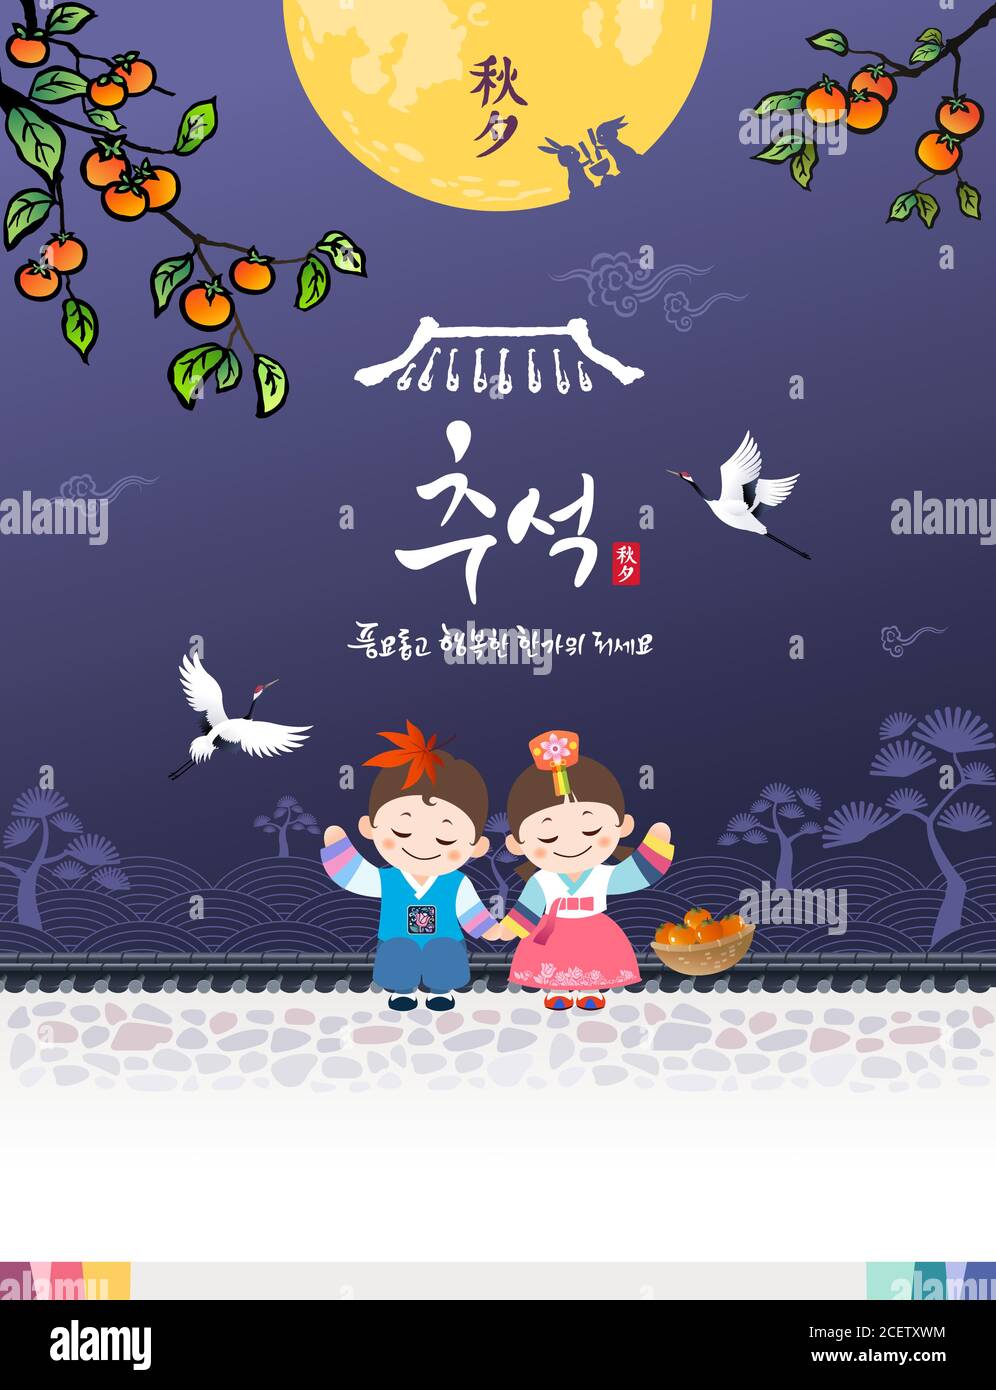 Le jour de Thanksgiving coréen. Hanbok enfants assis sur la clôture traditionnelle hanok, pleine lune, persimmon paysage d'arbre. Traduction coréenne, Happy Chuseok. Illustration de Vecteur